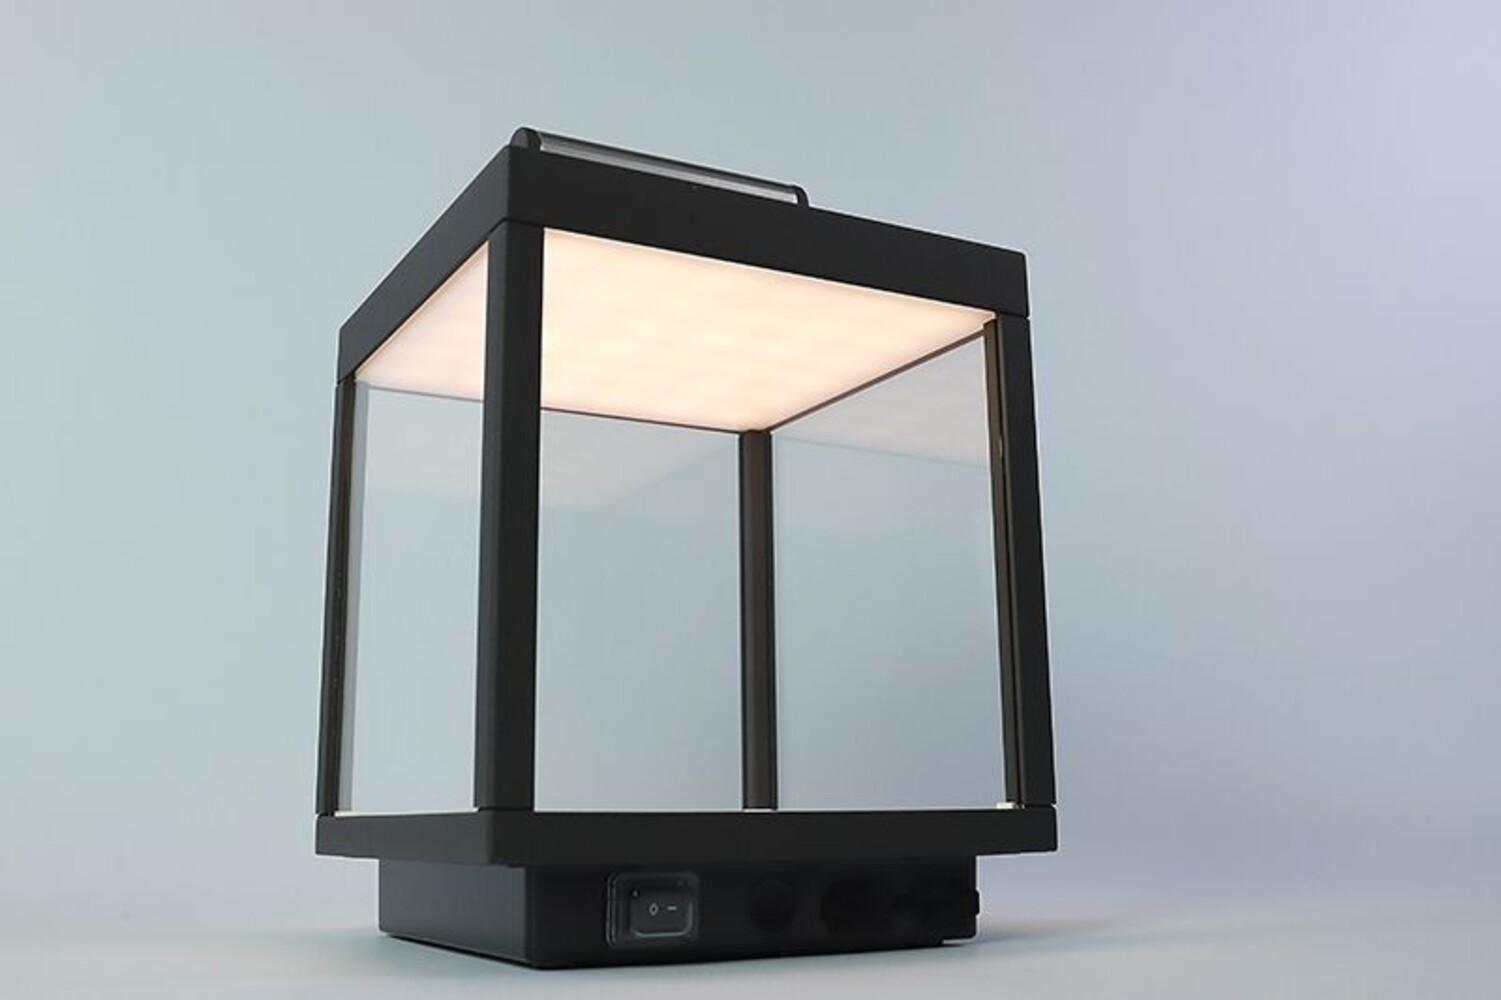 Deko-Light Leselampe von LED Universum mit dekorativem Design und hoher Helligkeit